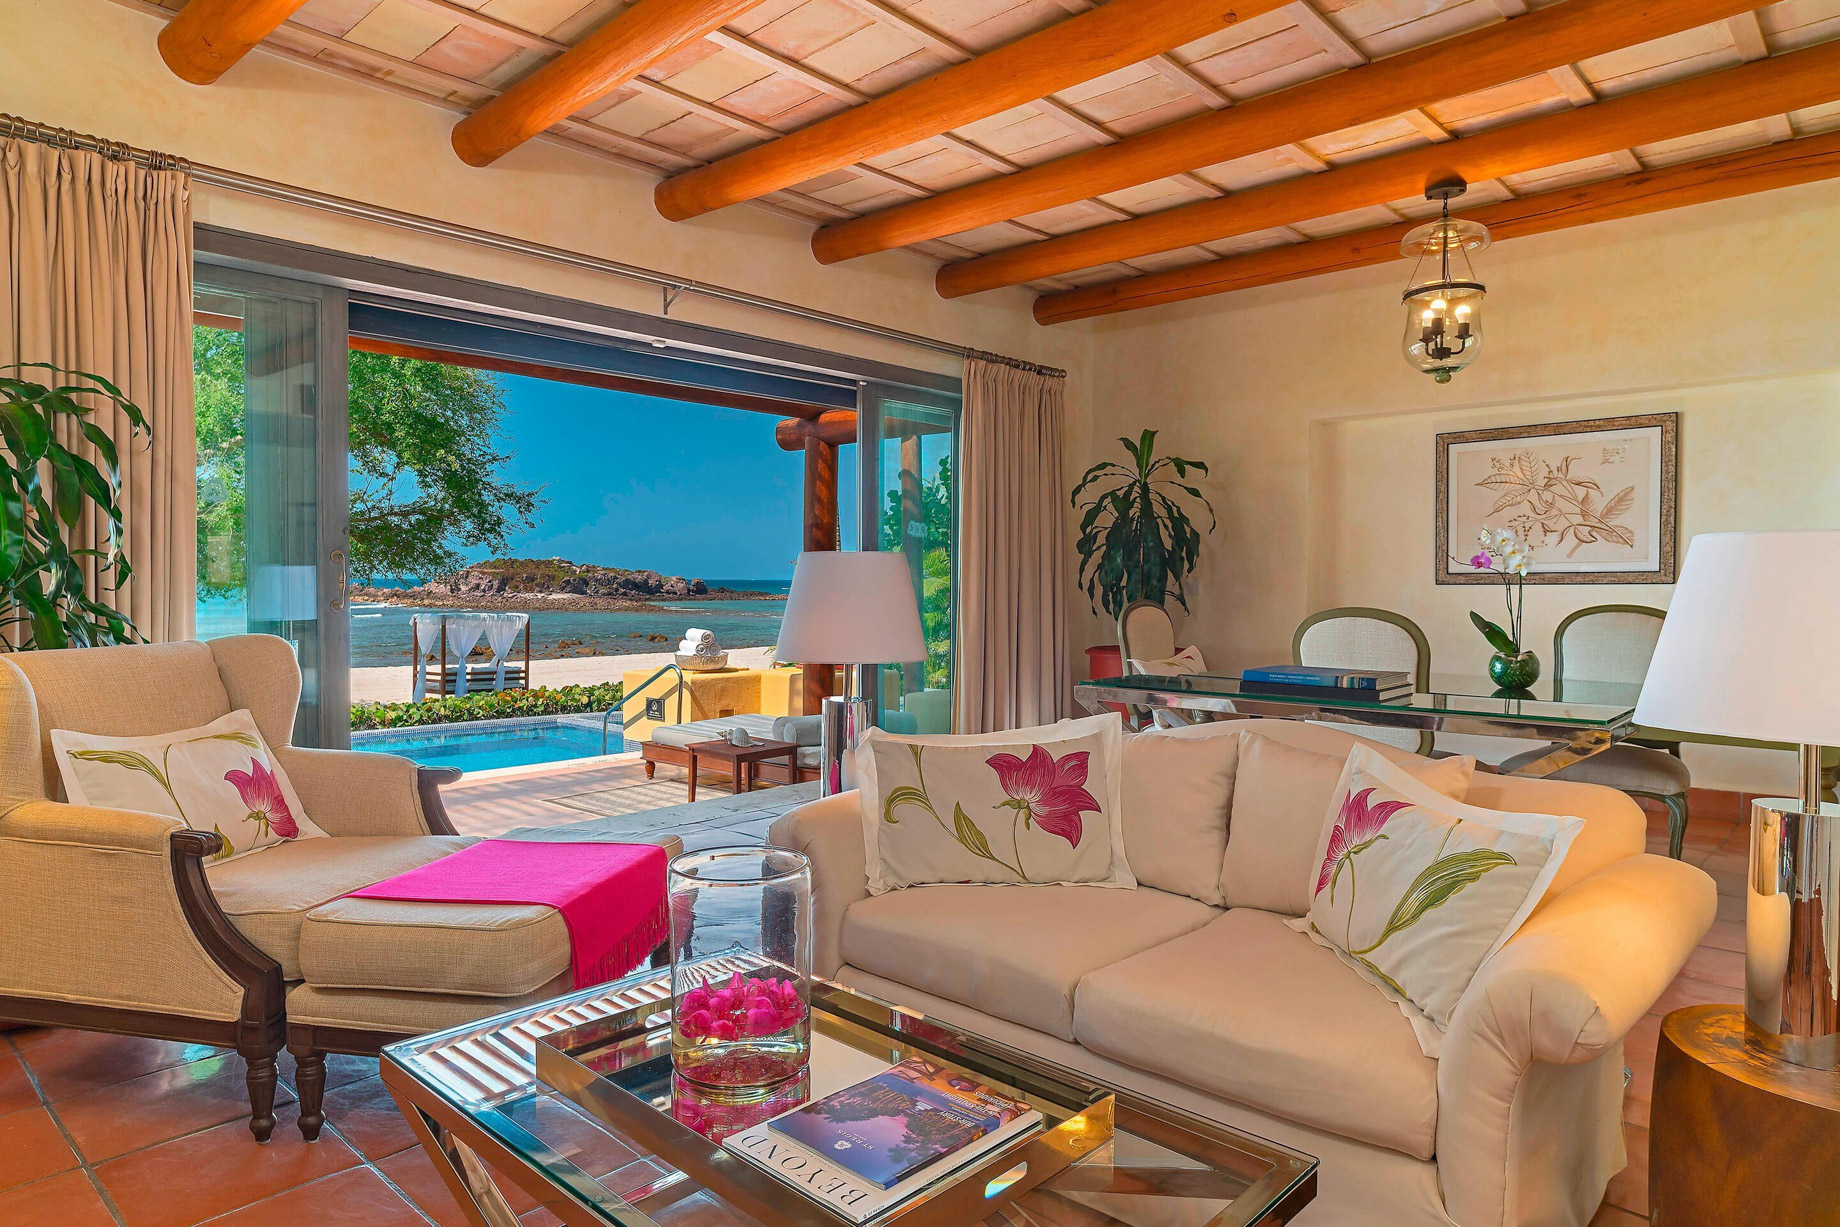 The St. Regis Punta Mita Resort – Nayarit, Mexico – One Bedroom Villa Living Room Ocean View